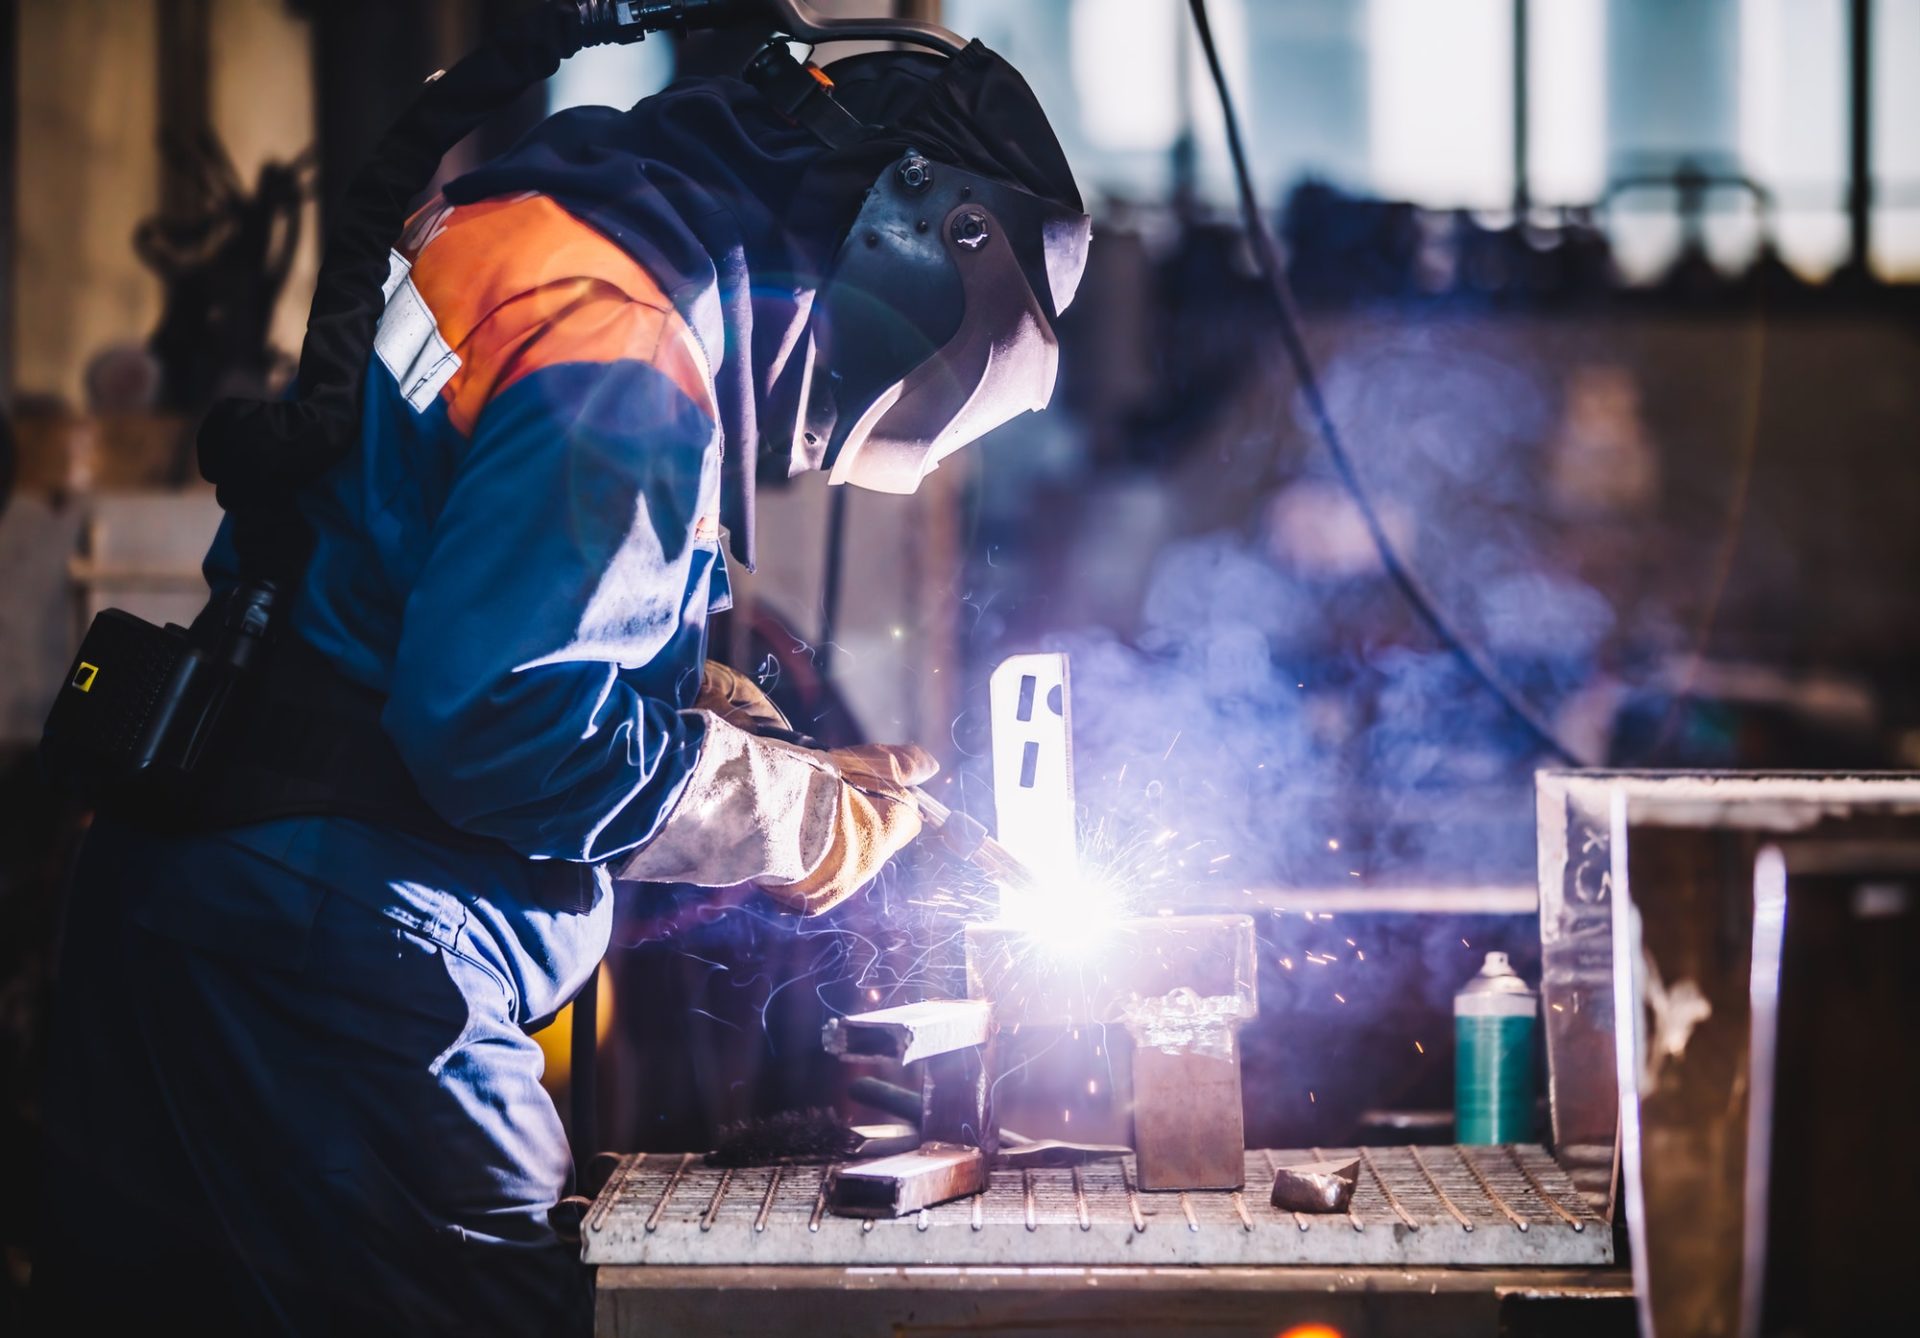 worker welding in oxygen mask in a factory e1638173195855